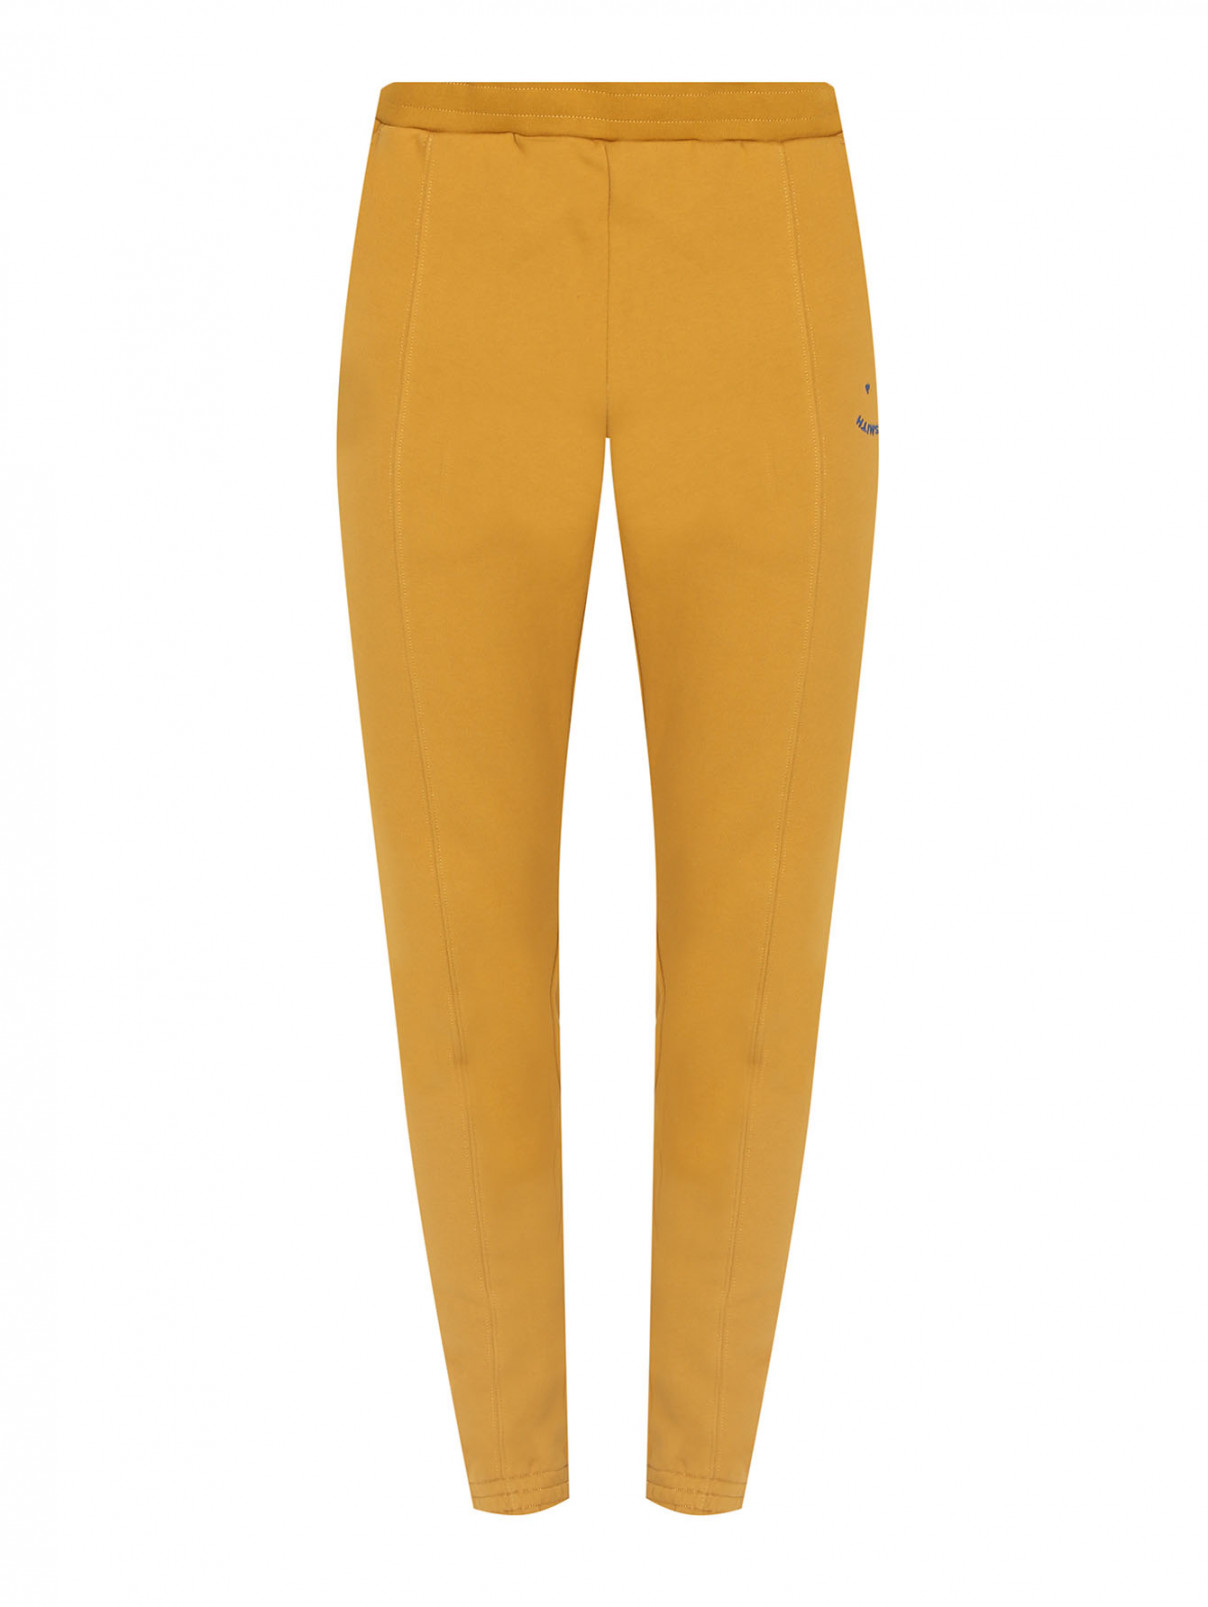 Однотонные брюки из хлопка на резинке Paul Smith  –  Общий вид  – Цвет:  Желтый